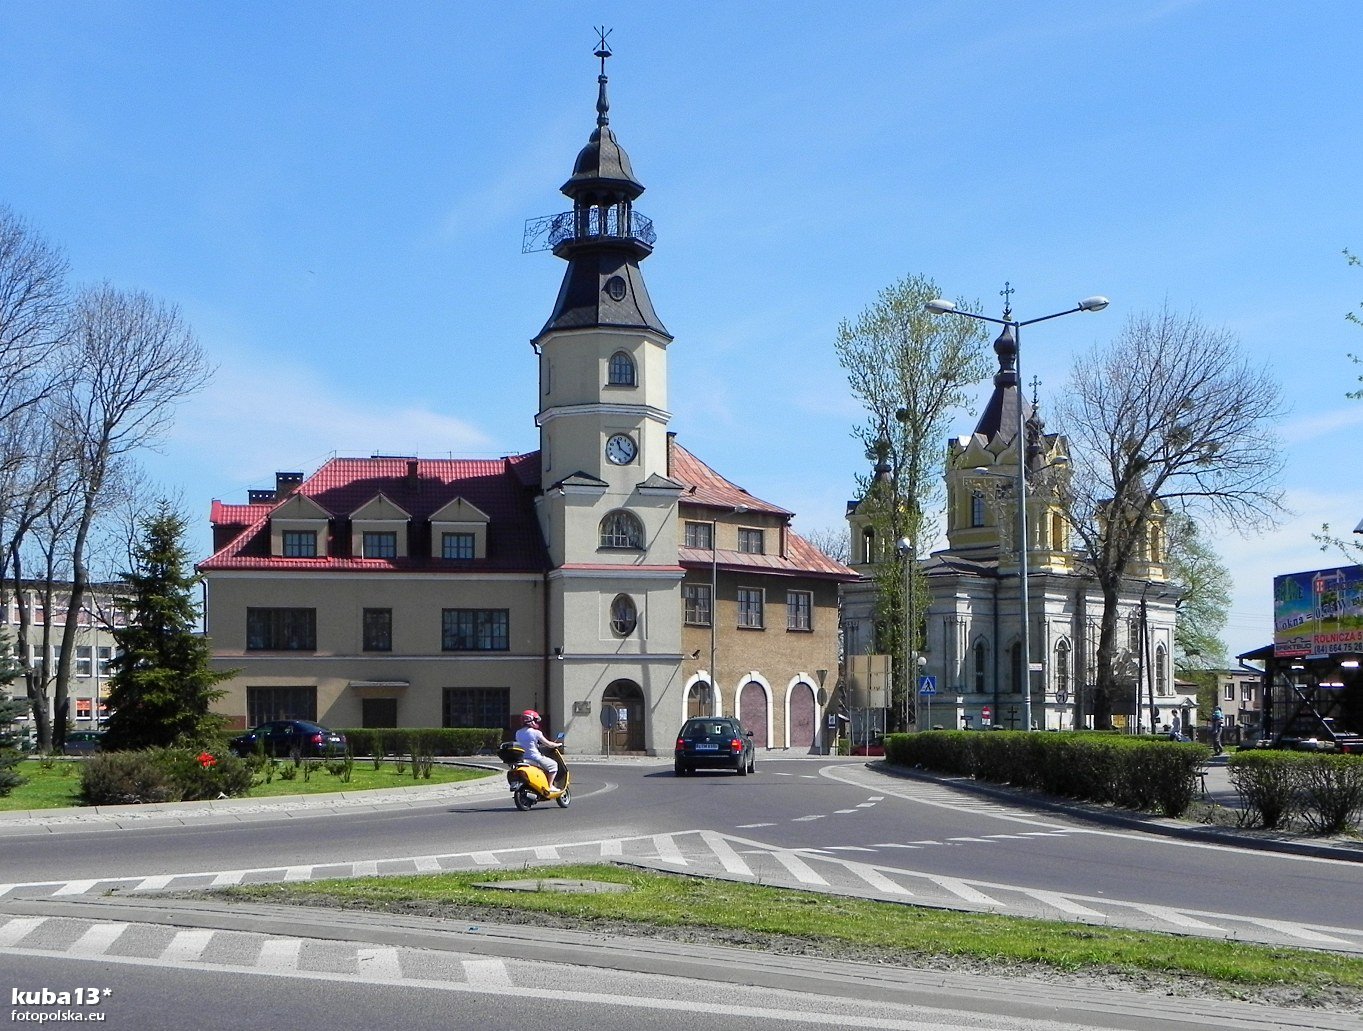 zdjęcie przedstawia budynek PSM od ulicy-ronda, z pojazdami poruszającymi się na rondzie, po bokach drzewa, krzewy, w tle od lewej część budynku biblioteki, od prawej cerkiew prawosławna, na samej górze bezchmurne niebo 